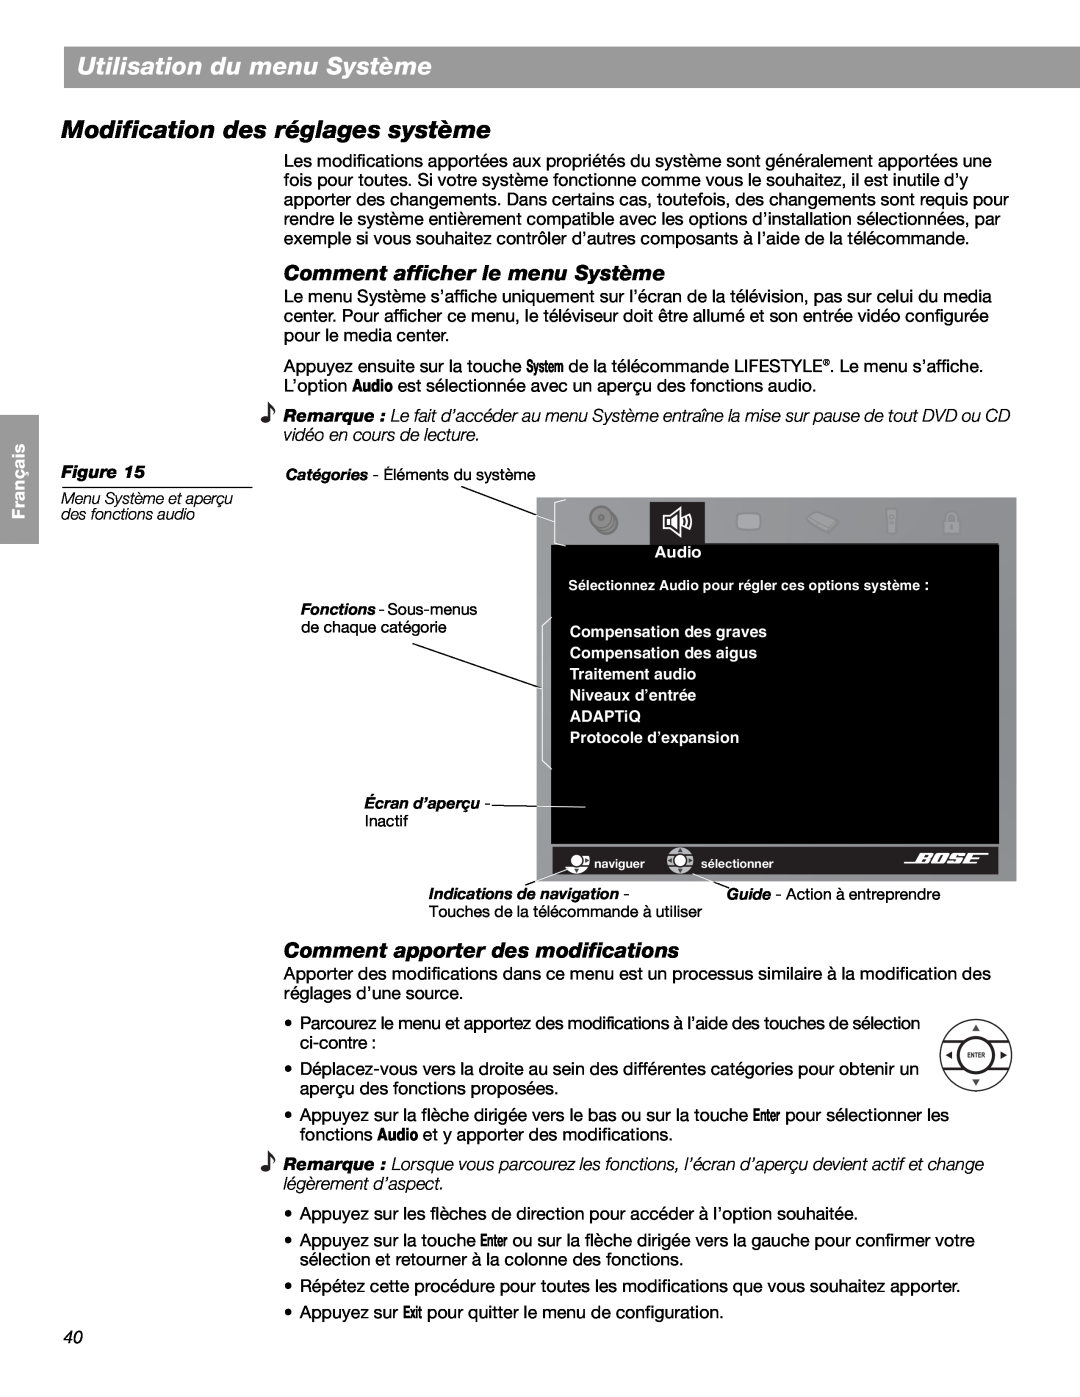 Bose LIFESTYLE 48, LIFESTYLE 38 Utilisation du menu Système, Modification des réglages système, English Español, Français 